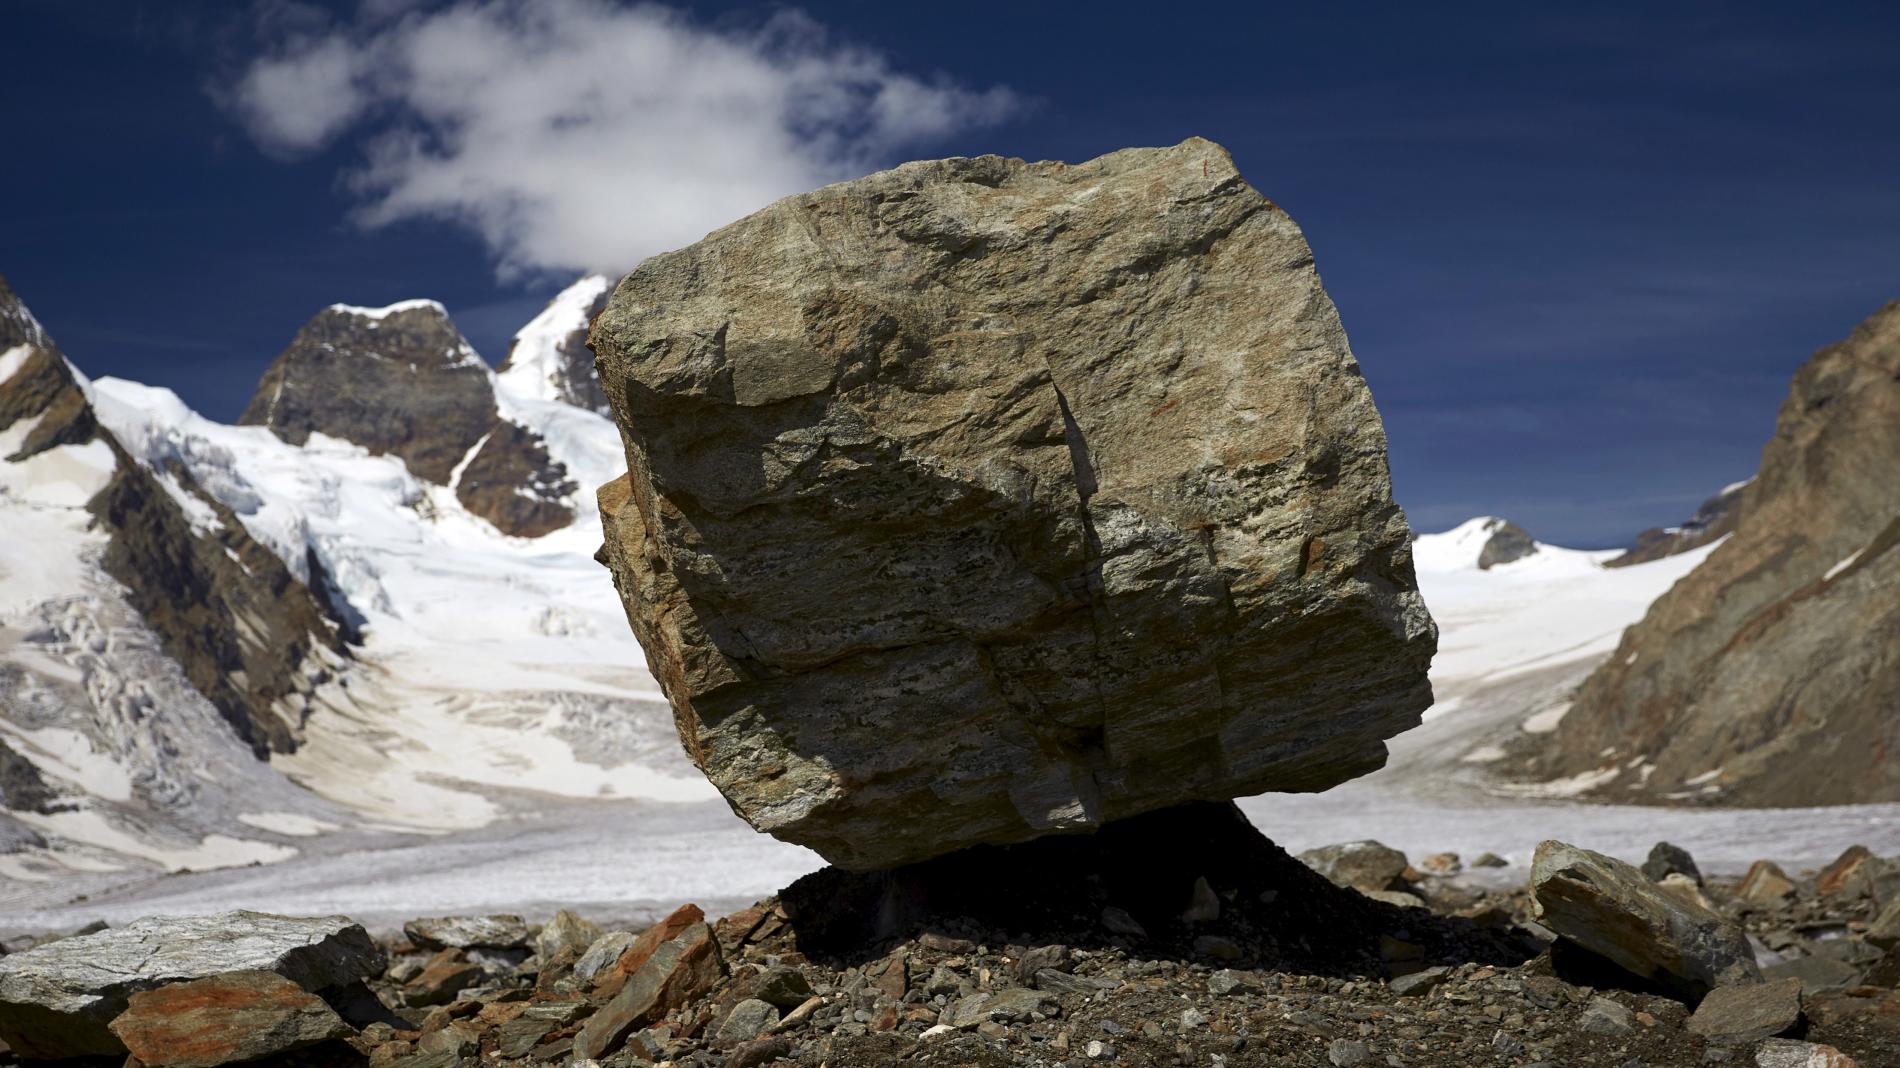 Huge Rock on a snowy mountain